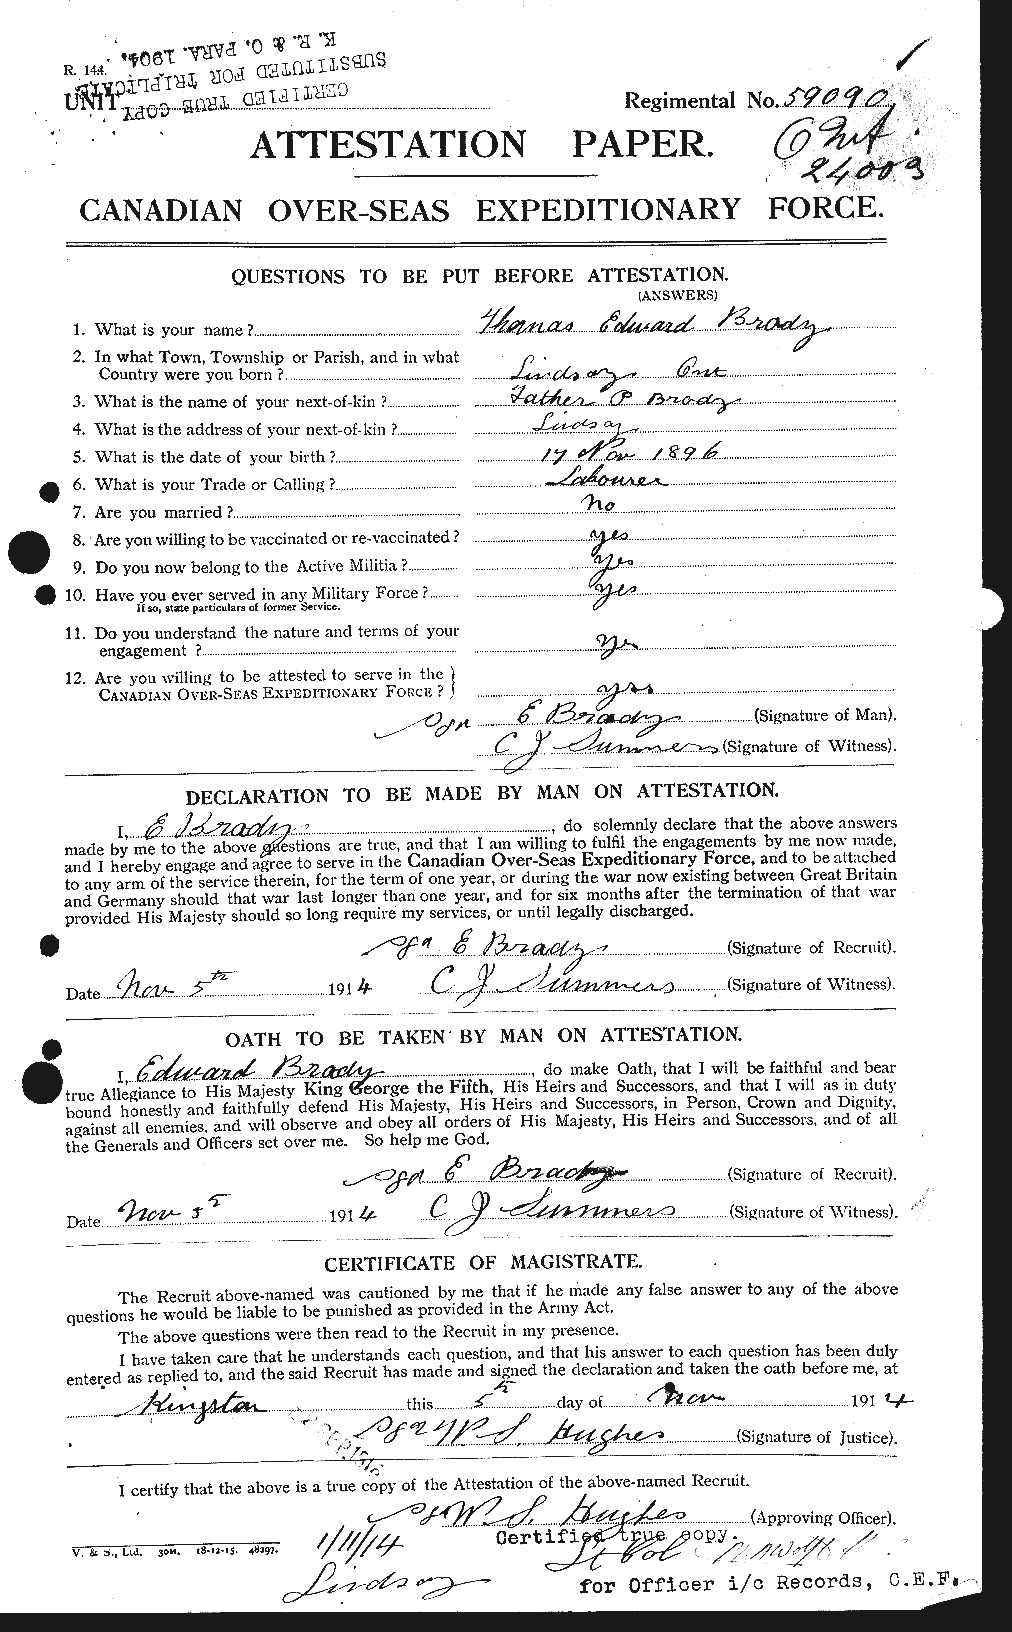 Dossiers du Personnel de la Première Guerre mondiale - CEC 257256a